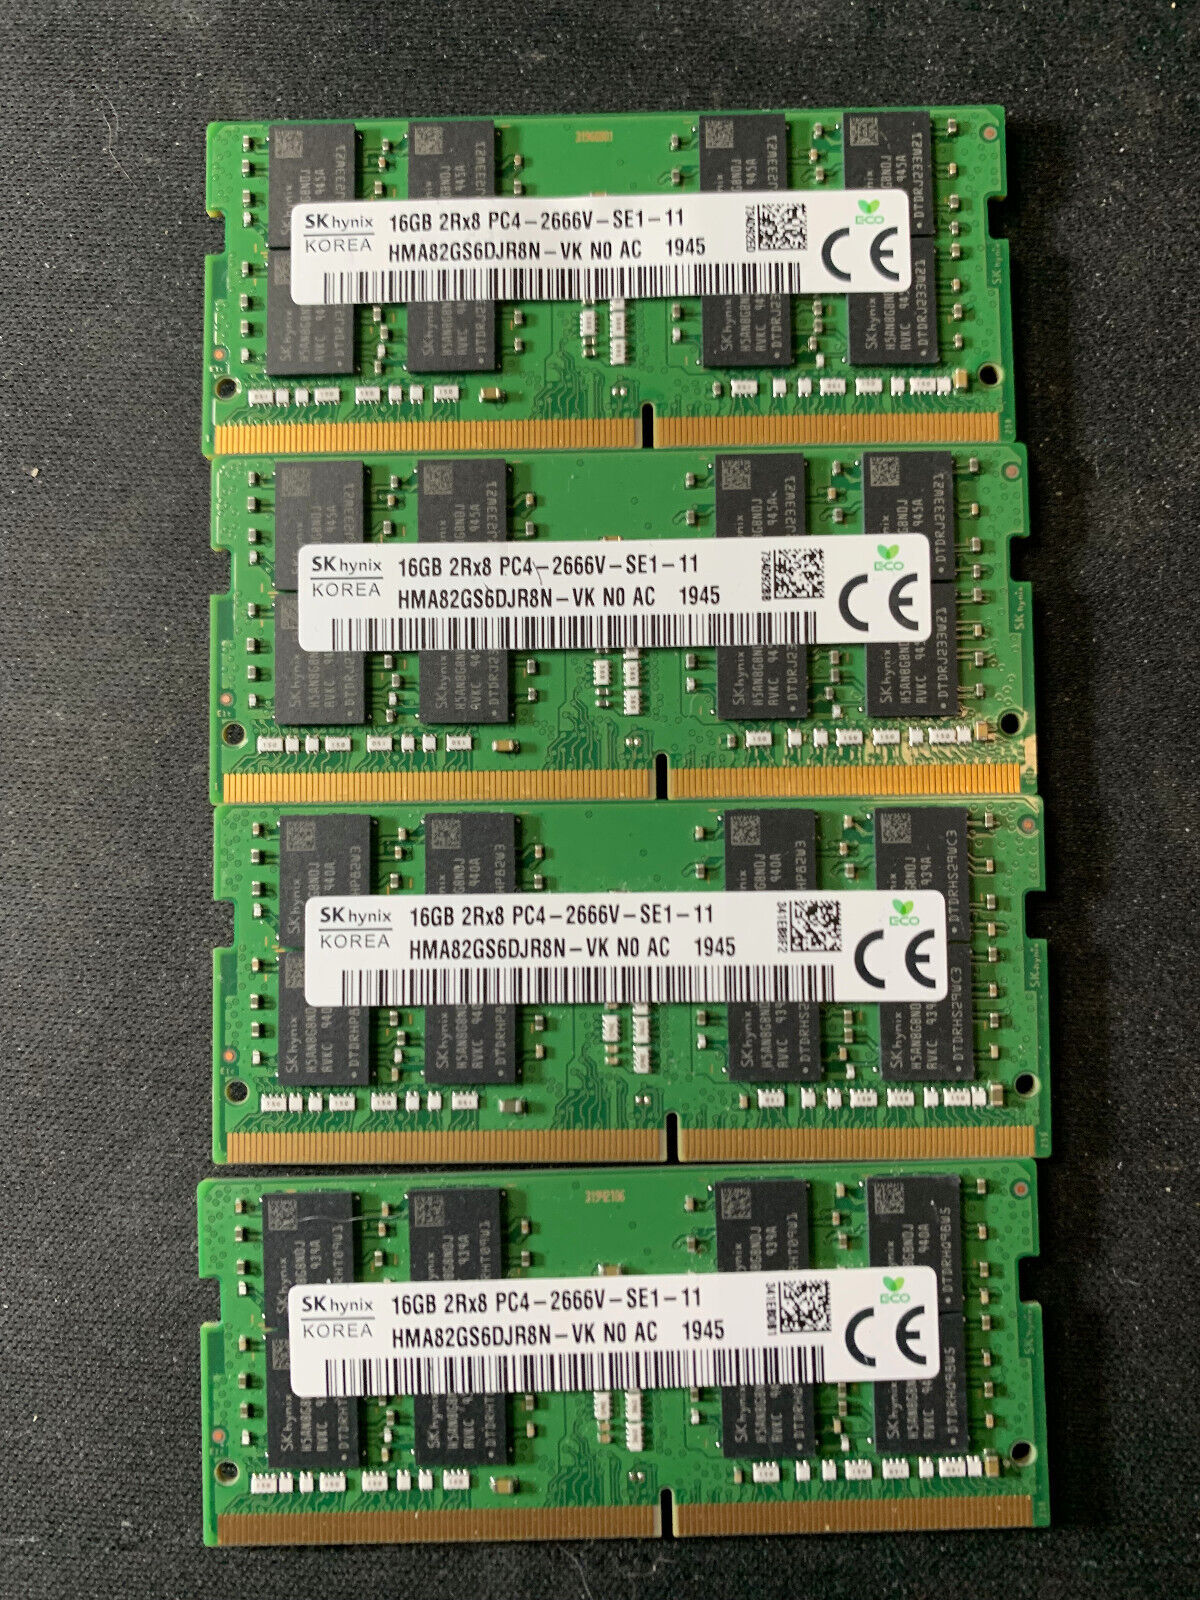 Lot of 4 - Hynix skHynix 16GB 2Rx8 PC4-2666V DDR4 SODIMM HMA82GS6DJR8N-VK N0 AC